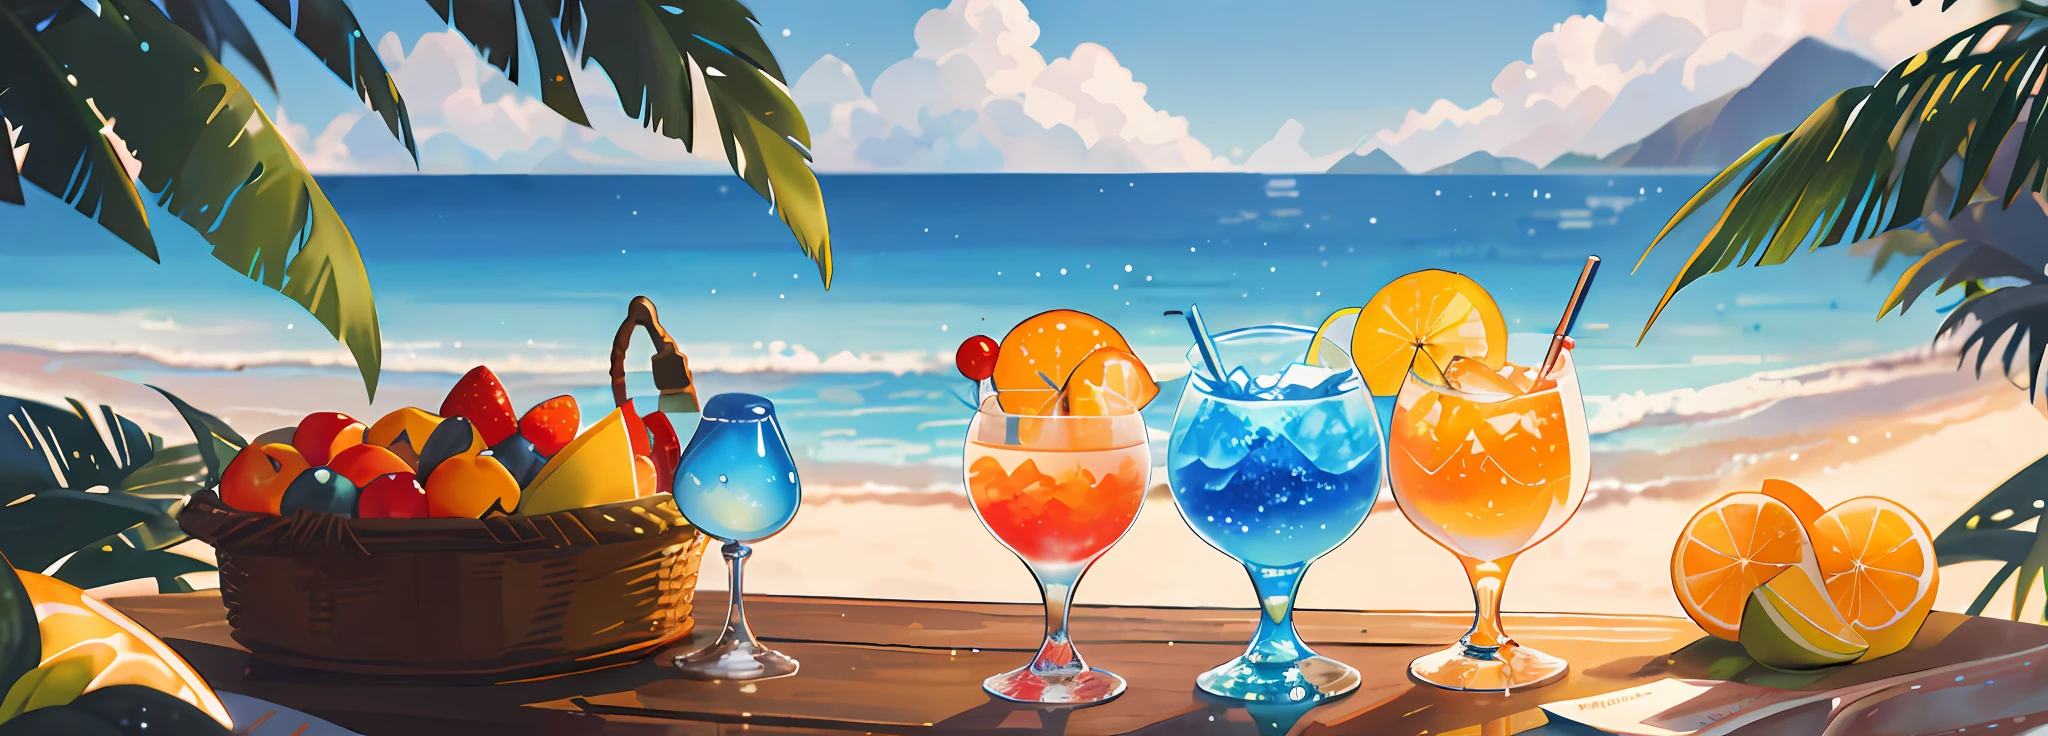 칵테일월드, 인간은 없어, 풍경, 여름, 하늘, 구름, 흐린 배경, 걸작, 최고의 품질, 하이퍼 디테일, 하이퍼 디테일, macro photography depicts 피크닉 장면s themed around 여름 tropical beach vacations. The protagonist of this photo is multiple cool glasses filled with 얼음wine. 렌즈는 안경에 초점을 맞춘다, 과일, 눈부신 한낮의 태양, 어안 렌즈, 먼 전망, 푸짐한 식사, (튀는 액체: 1.6), 얼음, (피크닉 장면: 0.5) (귀여운 디저트: 0.4), 똑똑. 와인이 가득 들어있어요, 반투명 액체, 주간 야외 조명 (해변 1.5), 열대 식물, 더운 날씨, HD 디테일, 젖은 워터마크, 하이퍼디테일, 영화 같은, 초현실주의, 부드러운 빛, 딥 필드 포커스 보케, 광선 추적, 퍼지다 (초미세 유리 반사), and 초현실주의.